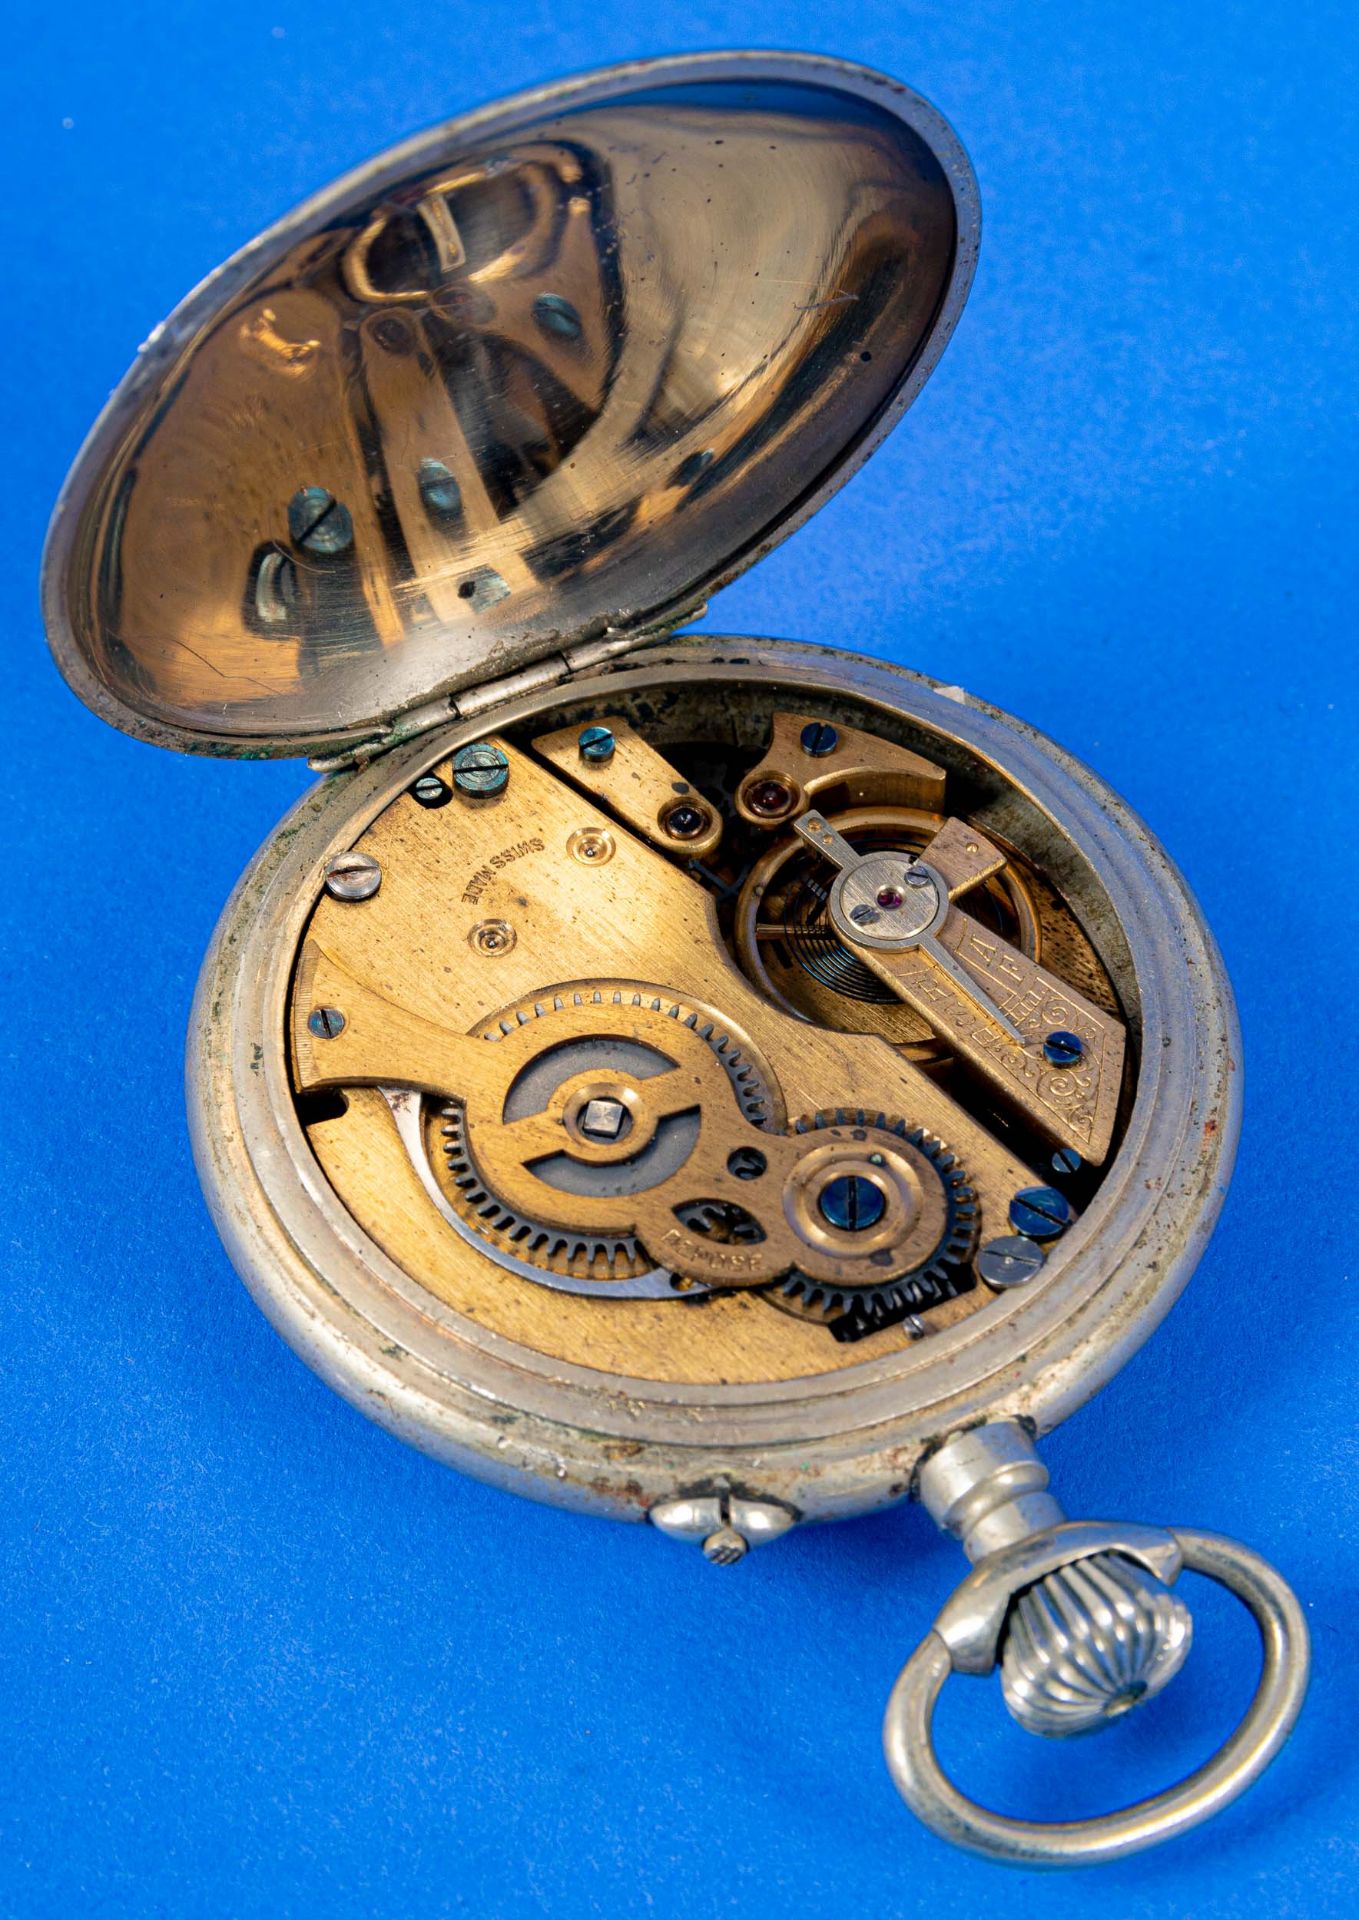 4teilige Sammlung Roßkopf'scher Patent-Taschenuhren, Ende 19. bzw. Anfang 20. Jhdt., versch. Alter, - Bild 10 aus 14